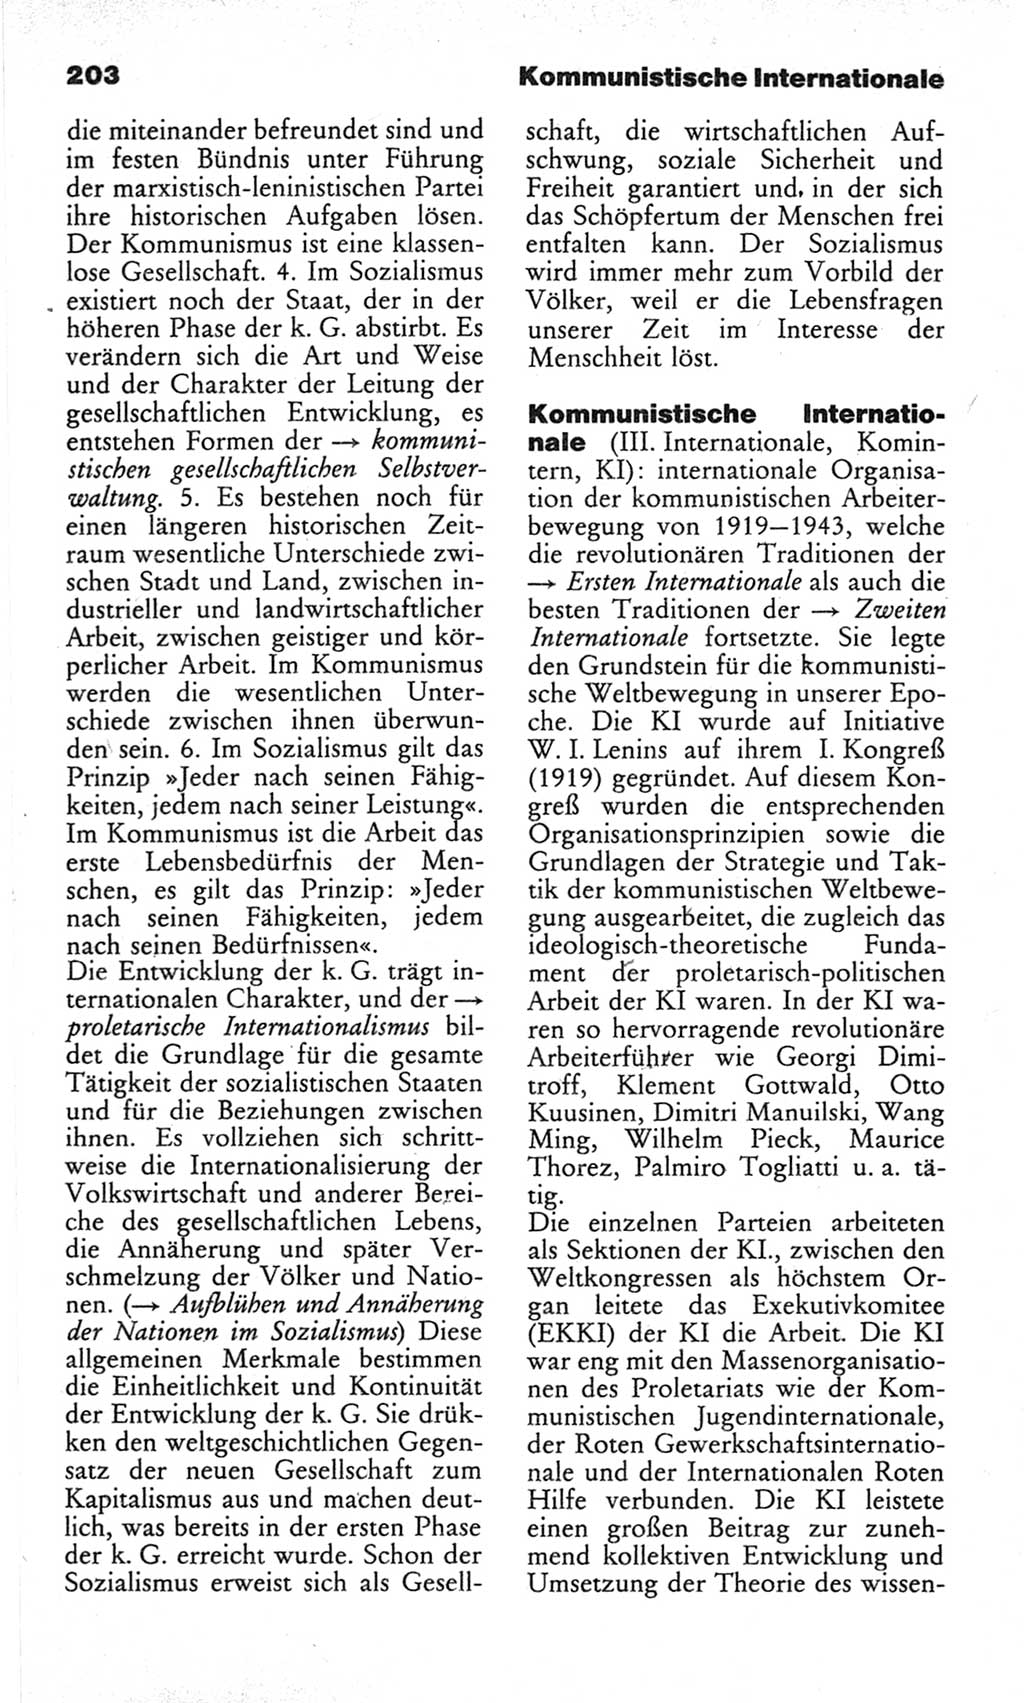 Wörterbuch des wissenschaftlichen Kommunismus [Deutsche Demokratische Republik (DDR)] 1982, Seite 203 (Wb. wiss. Komm. DDR 1982, S. 203)